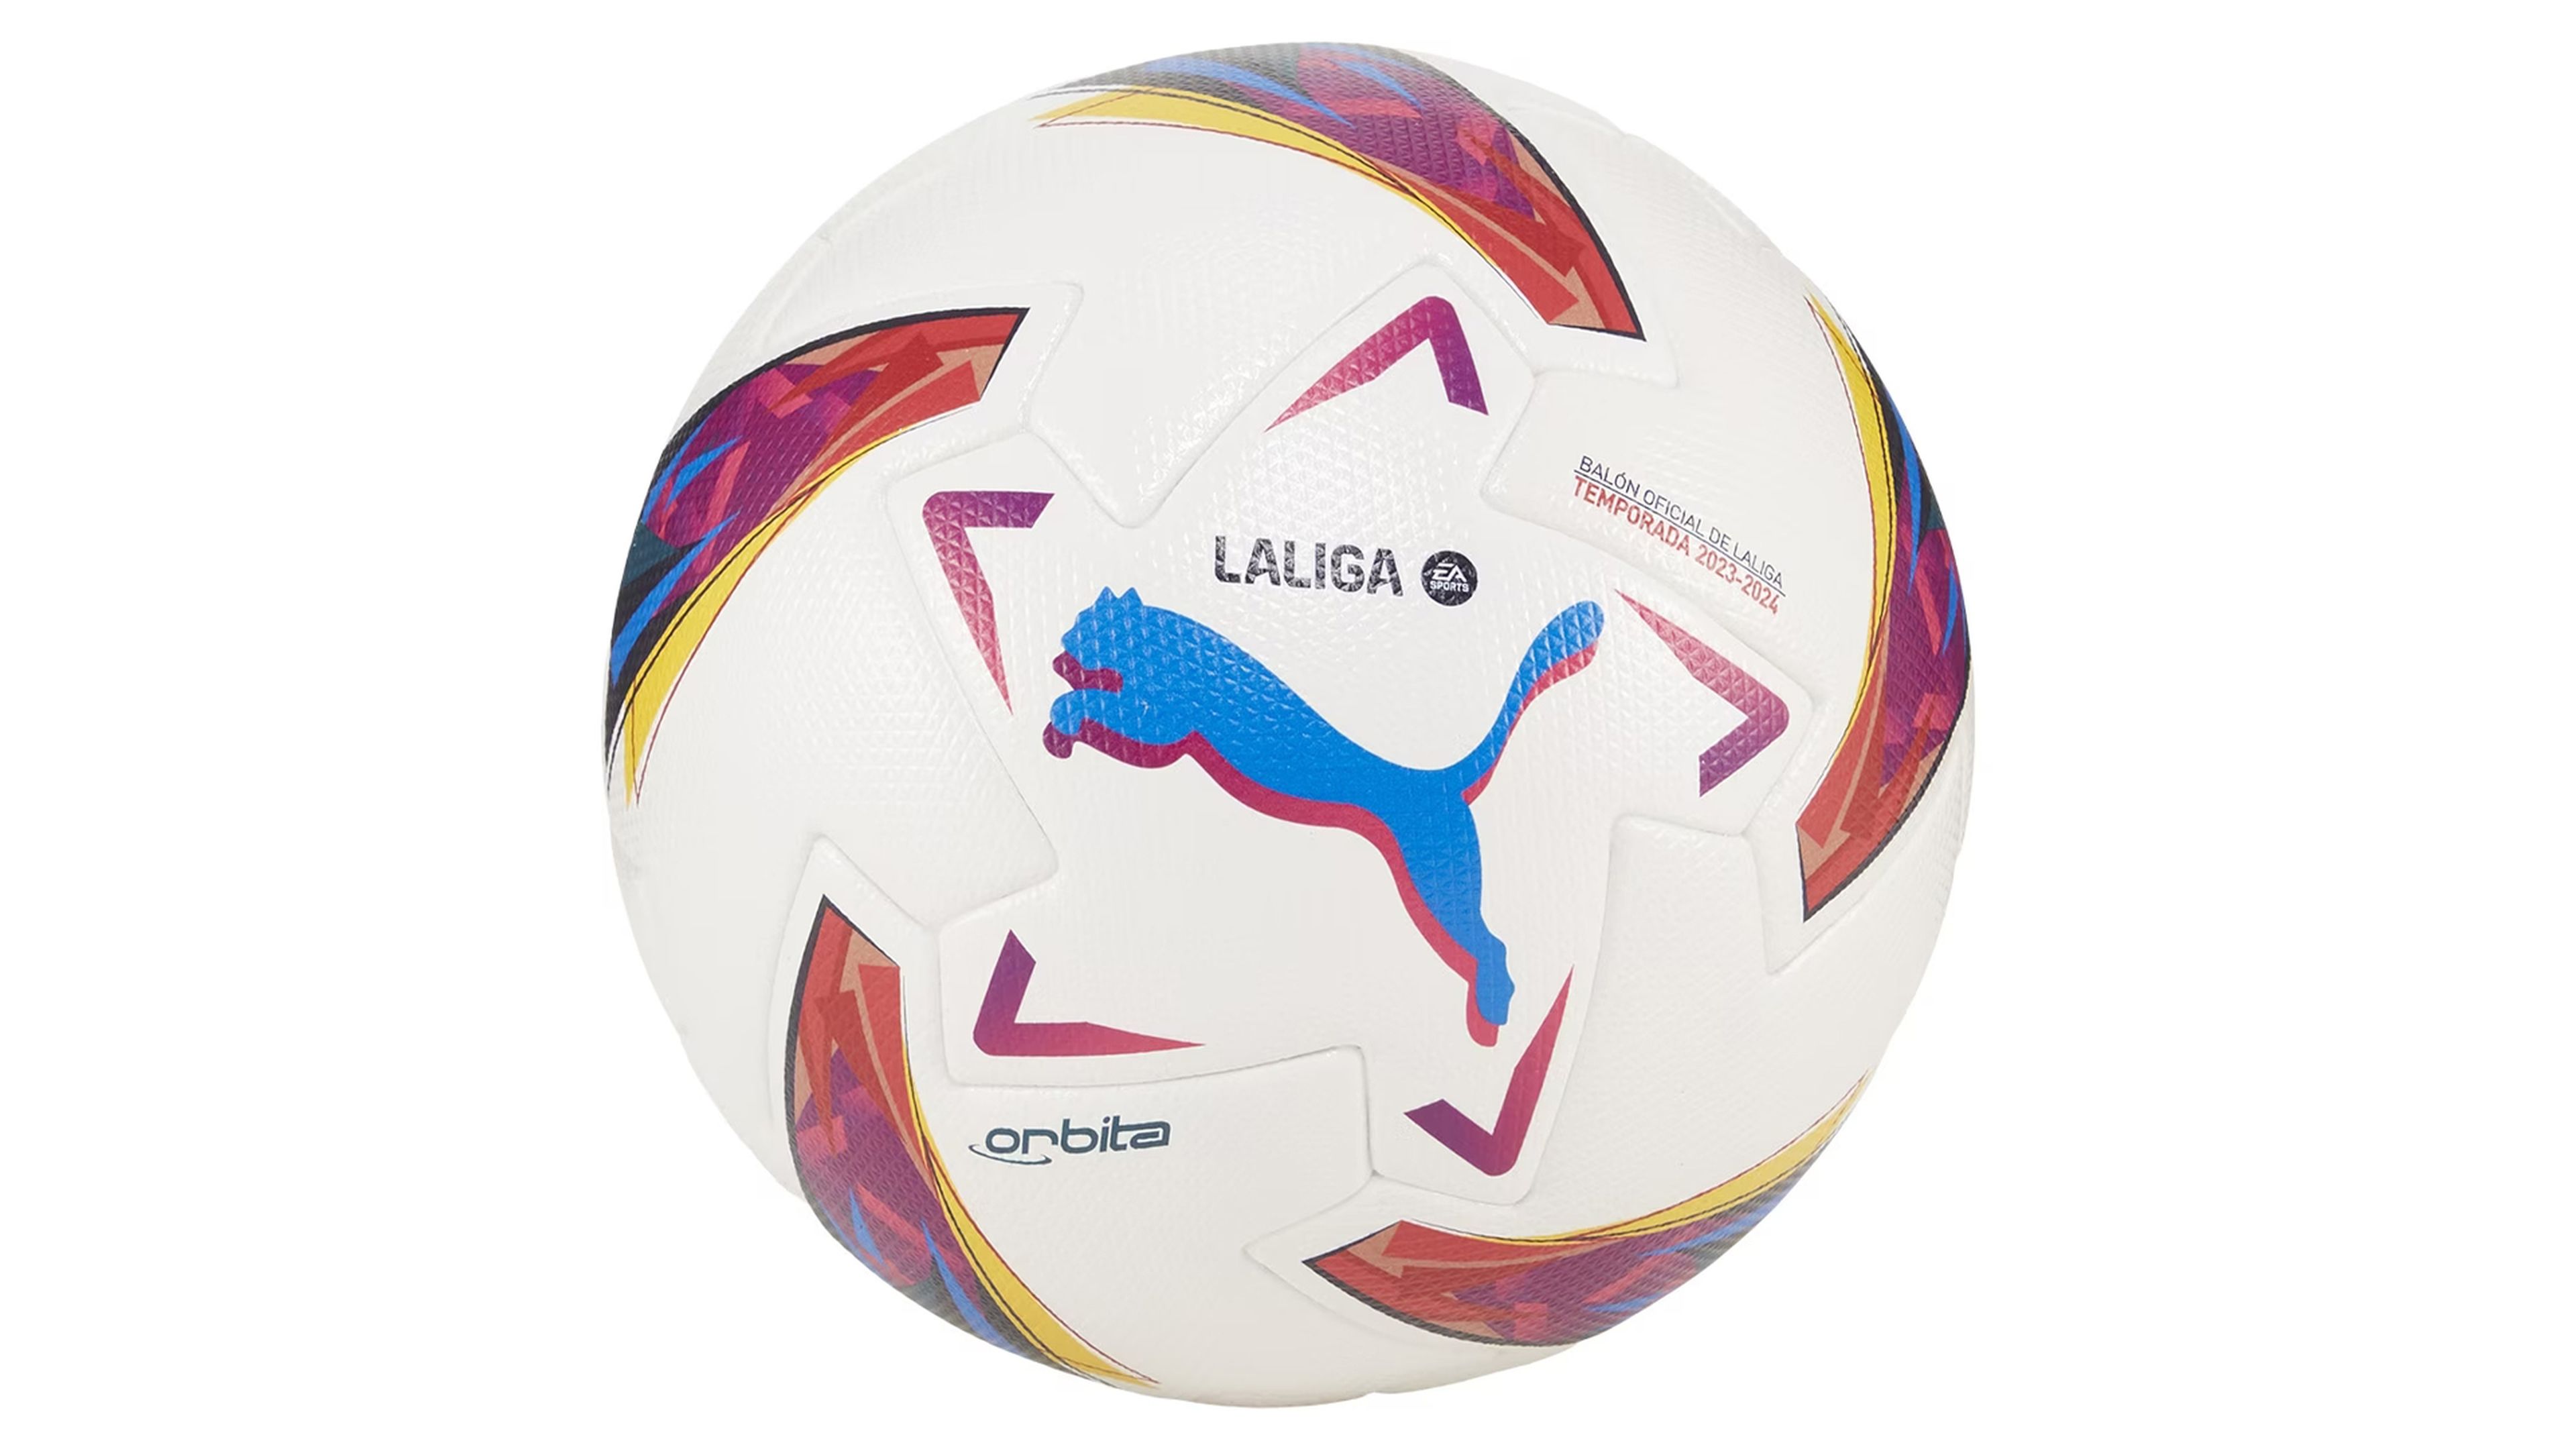 Así es el nuevo balón de LaLiga EA Sports 2023/24